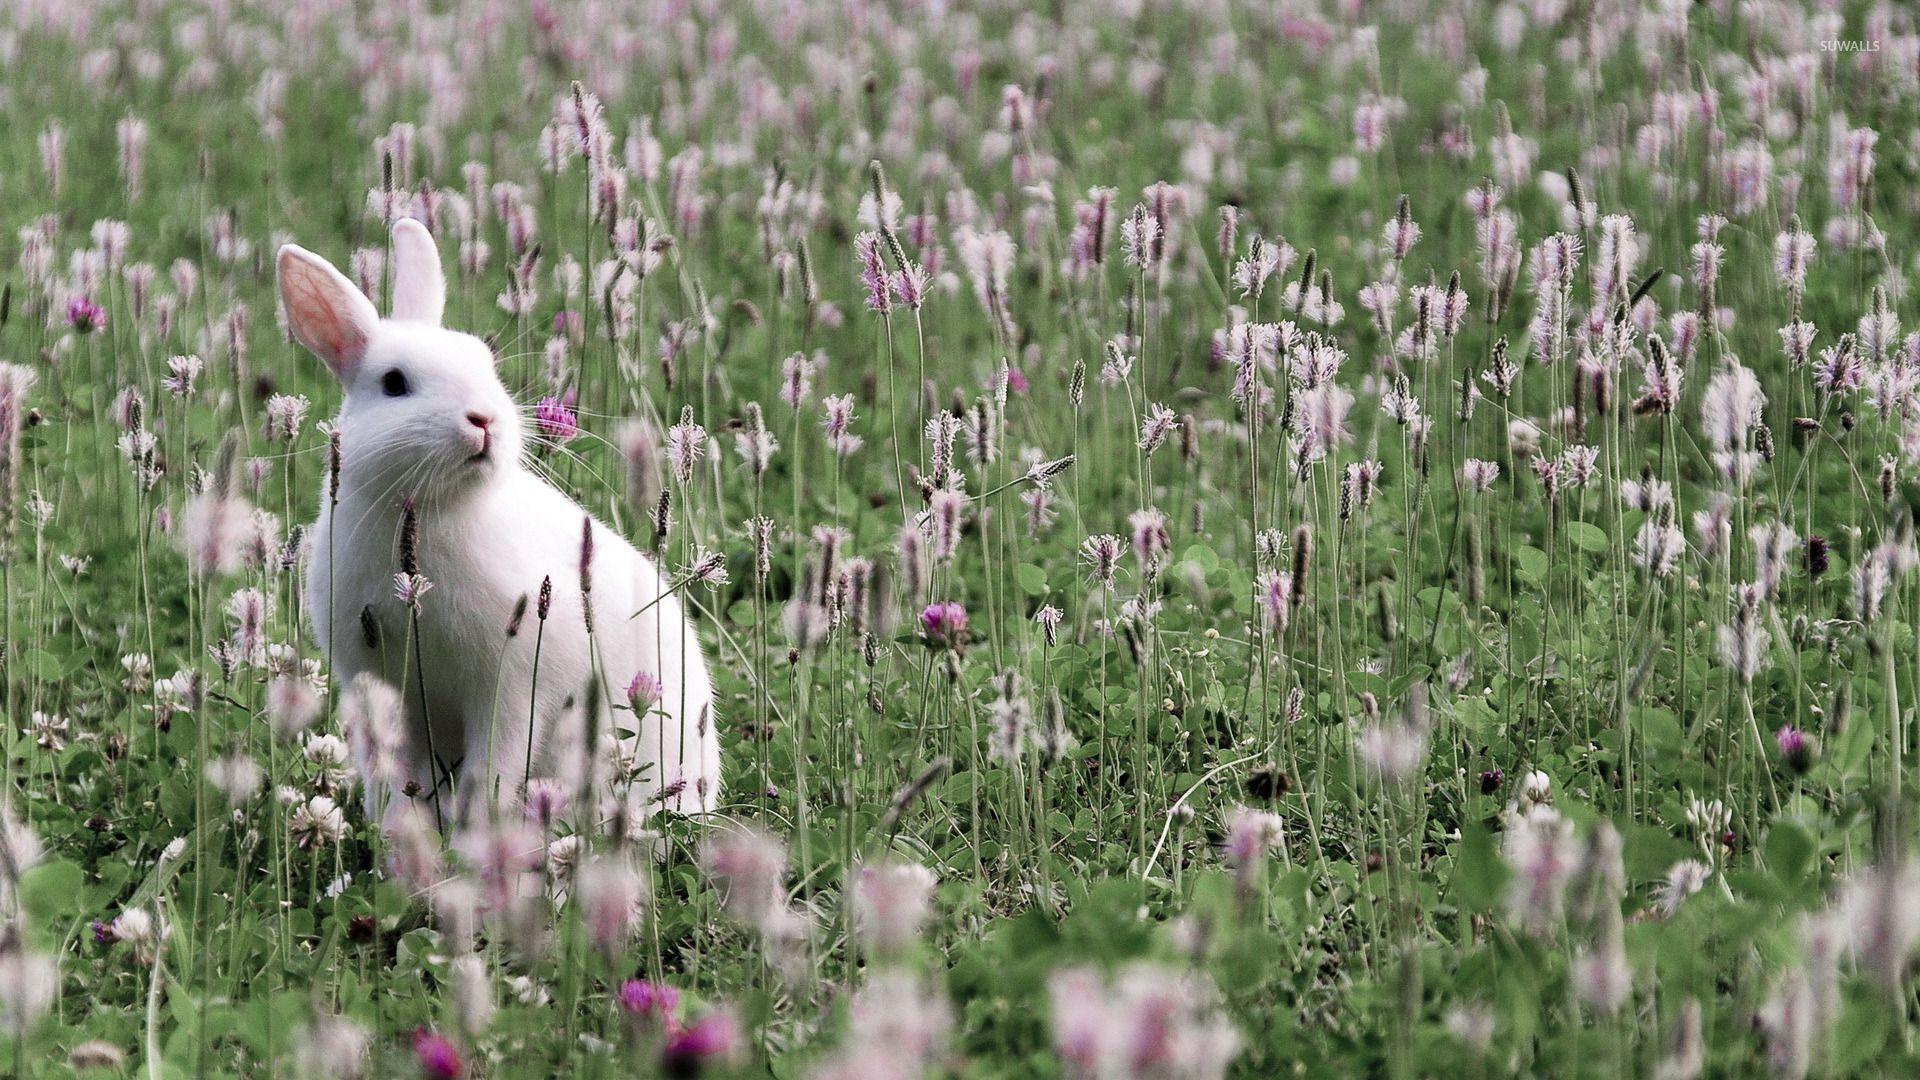 1920x1080 White bunny on the field hình nền - Hình nền động vật